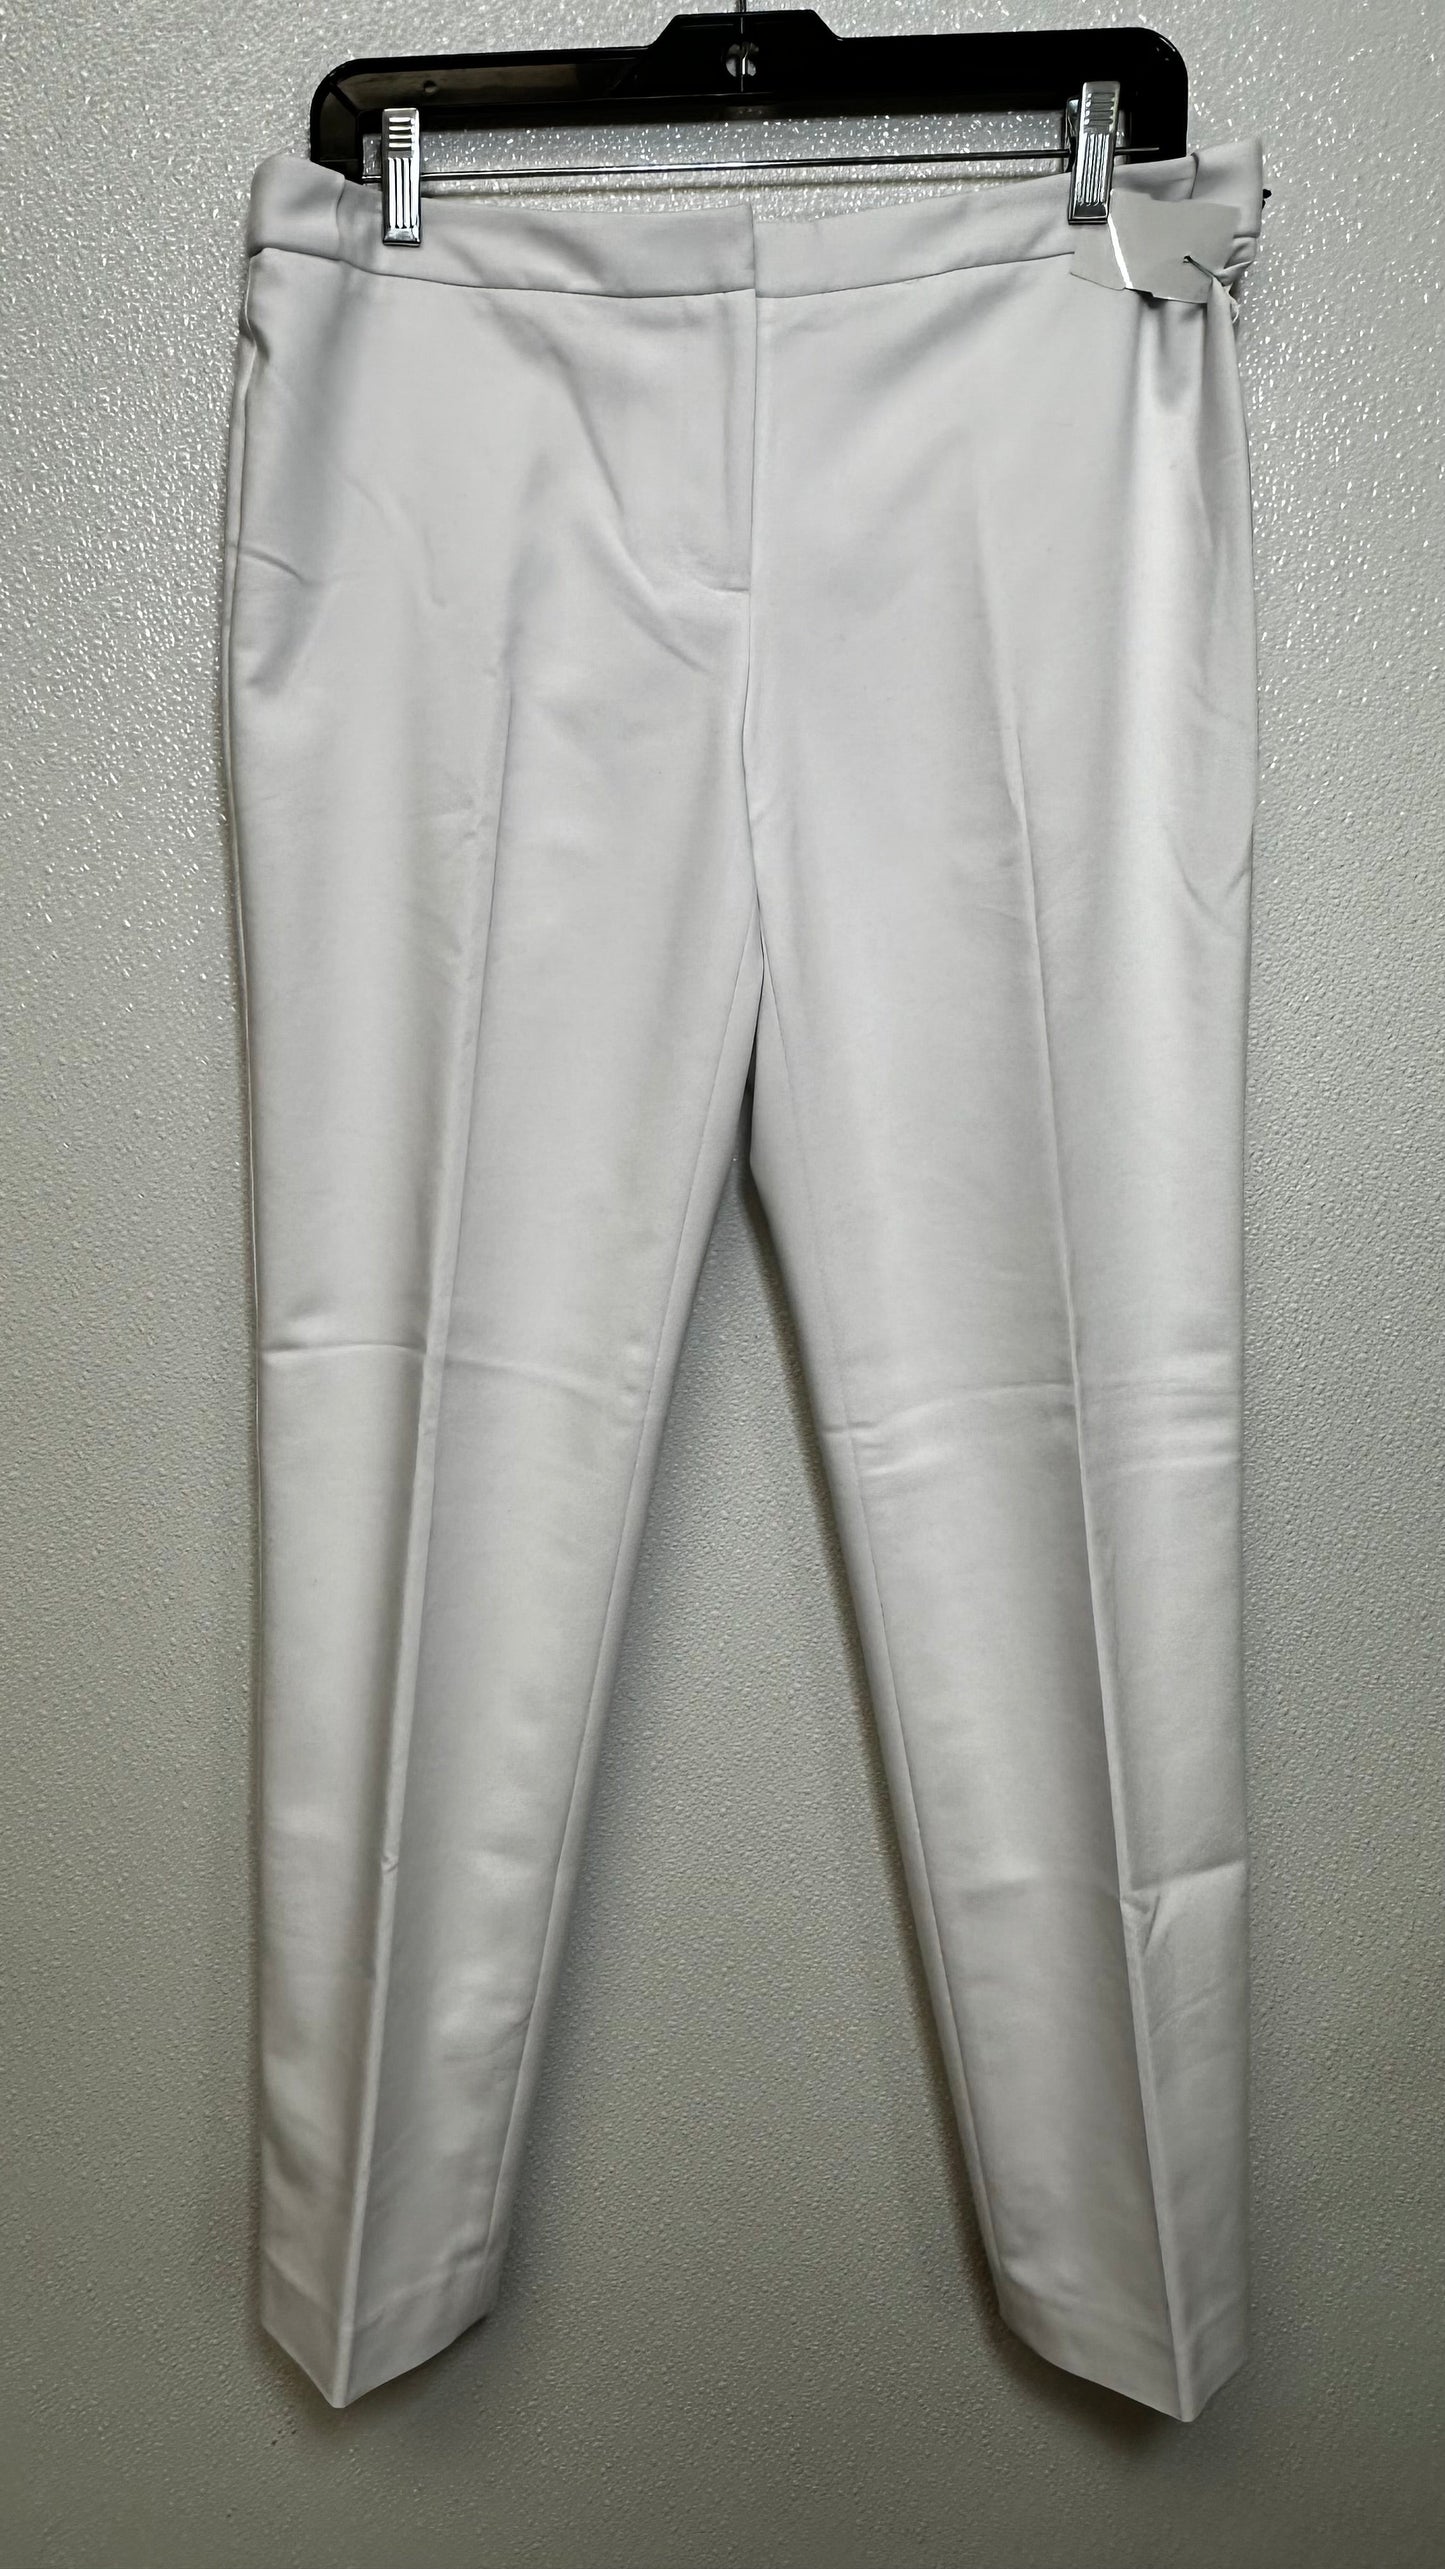 White Pants Ankle Calvin Klein, Size 6